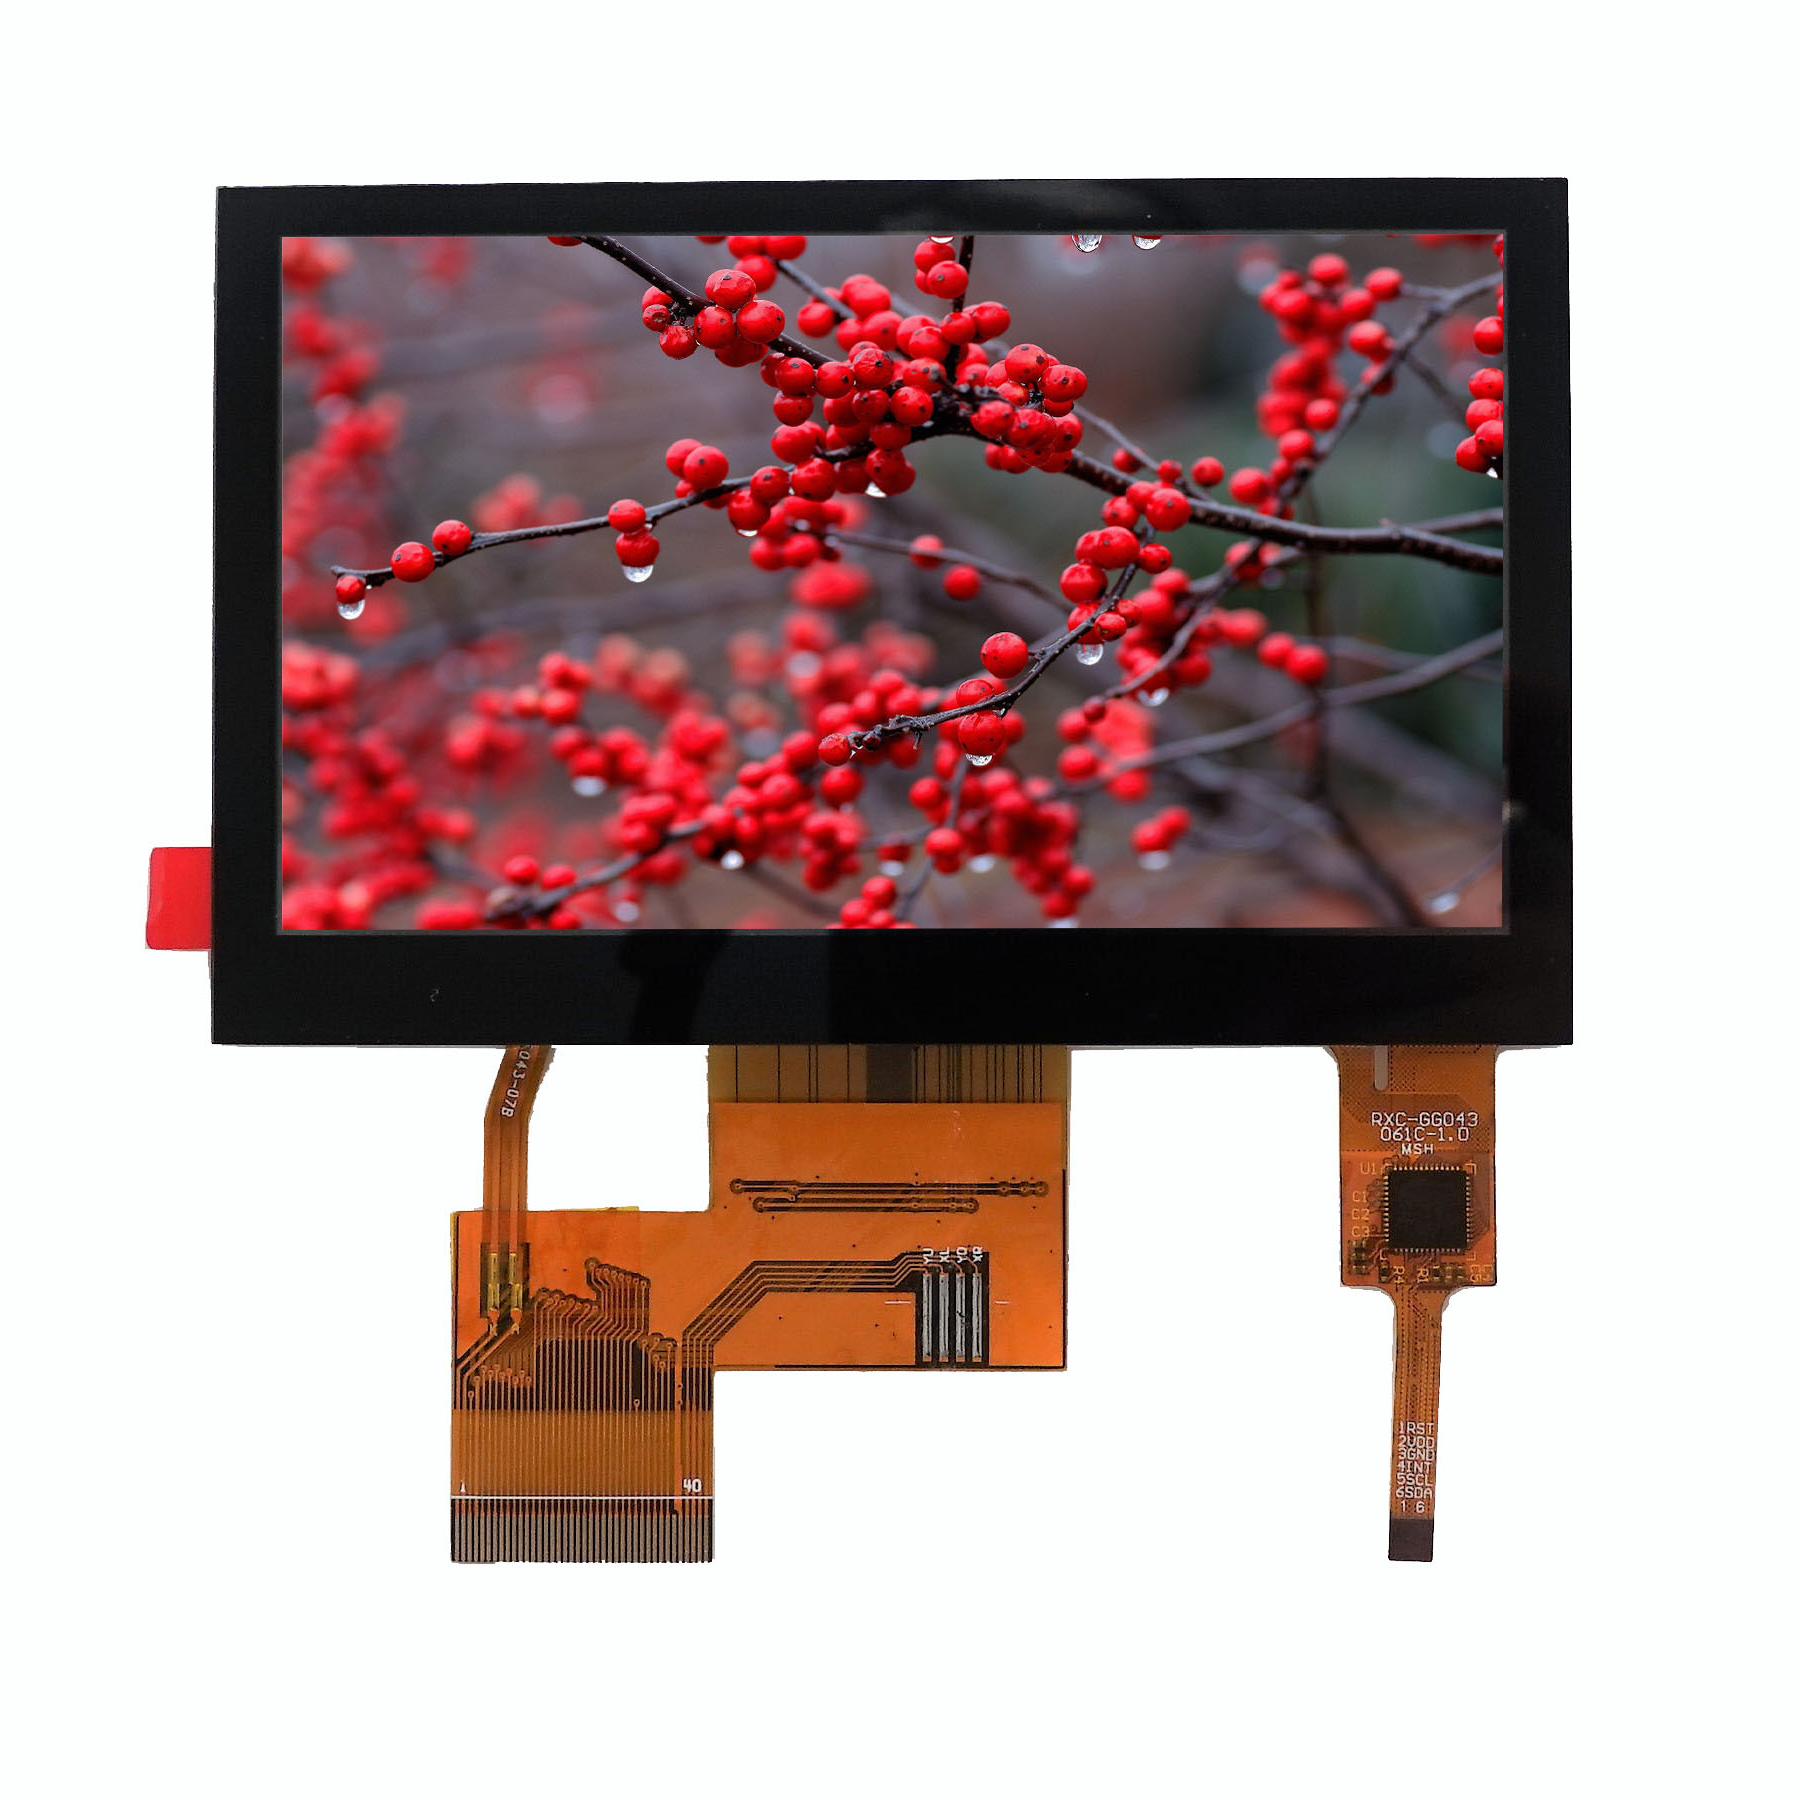 Hauptschnittstelle des LCD-Bildschirms und Produktbeschreibung